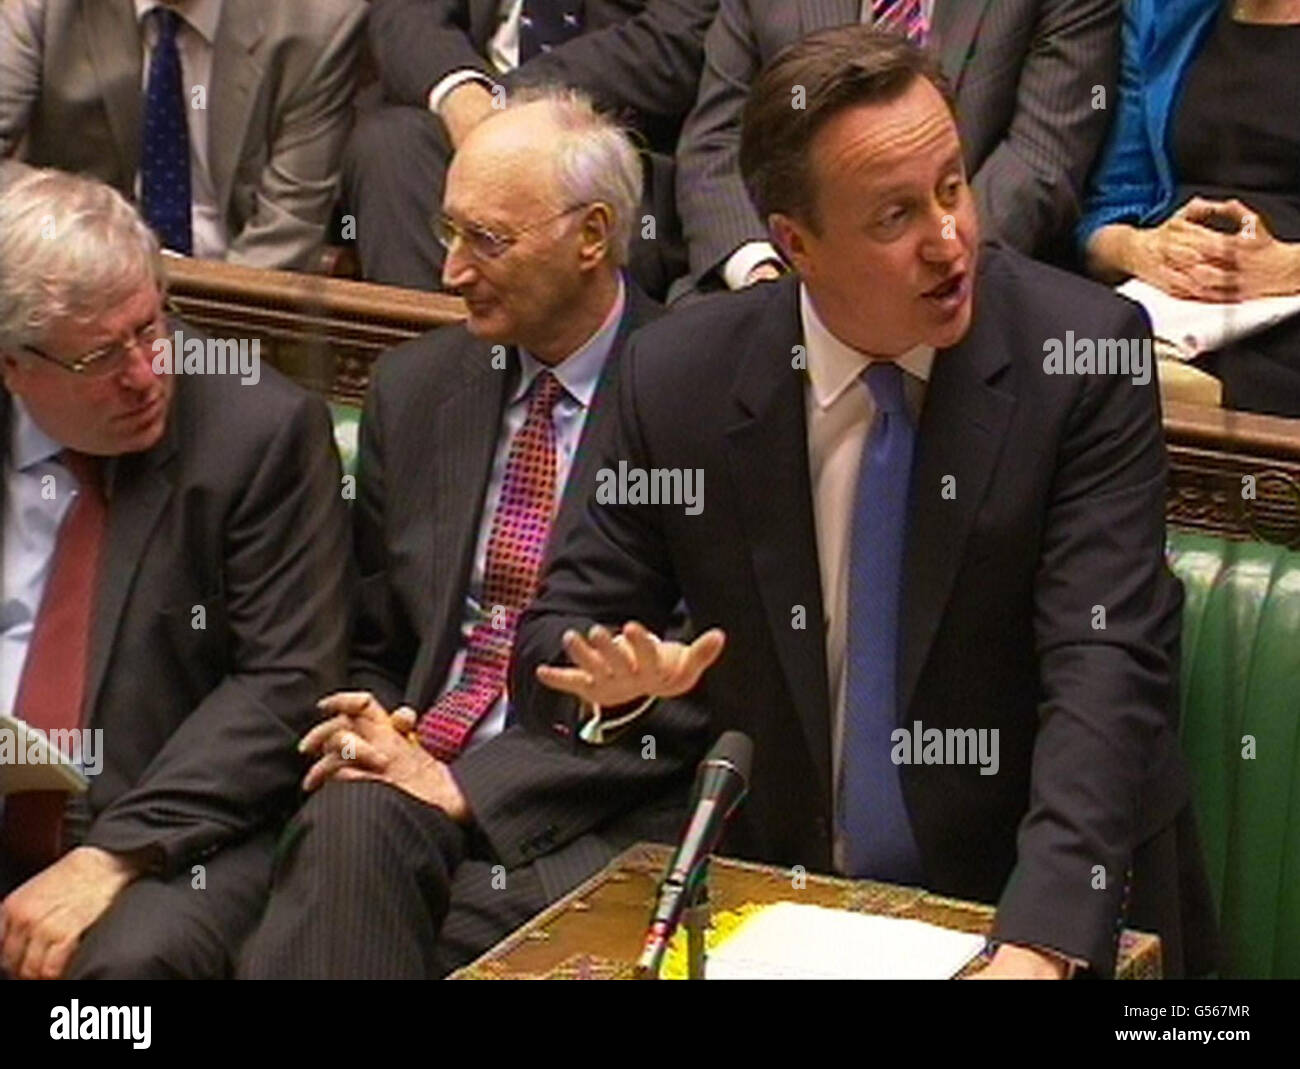 El Primer Ministro David Cameron, habla durante las preguntas al Primer Ministro en la Cámara de los Comunes de Londres. Foto de stock